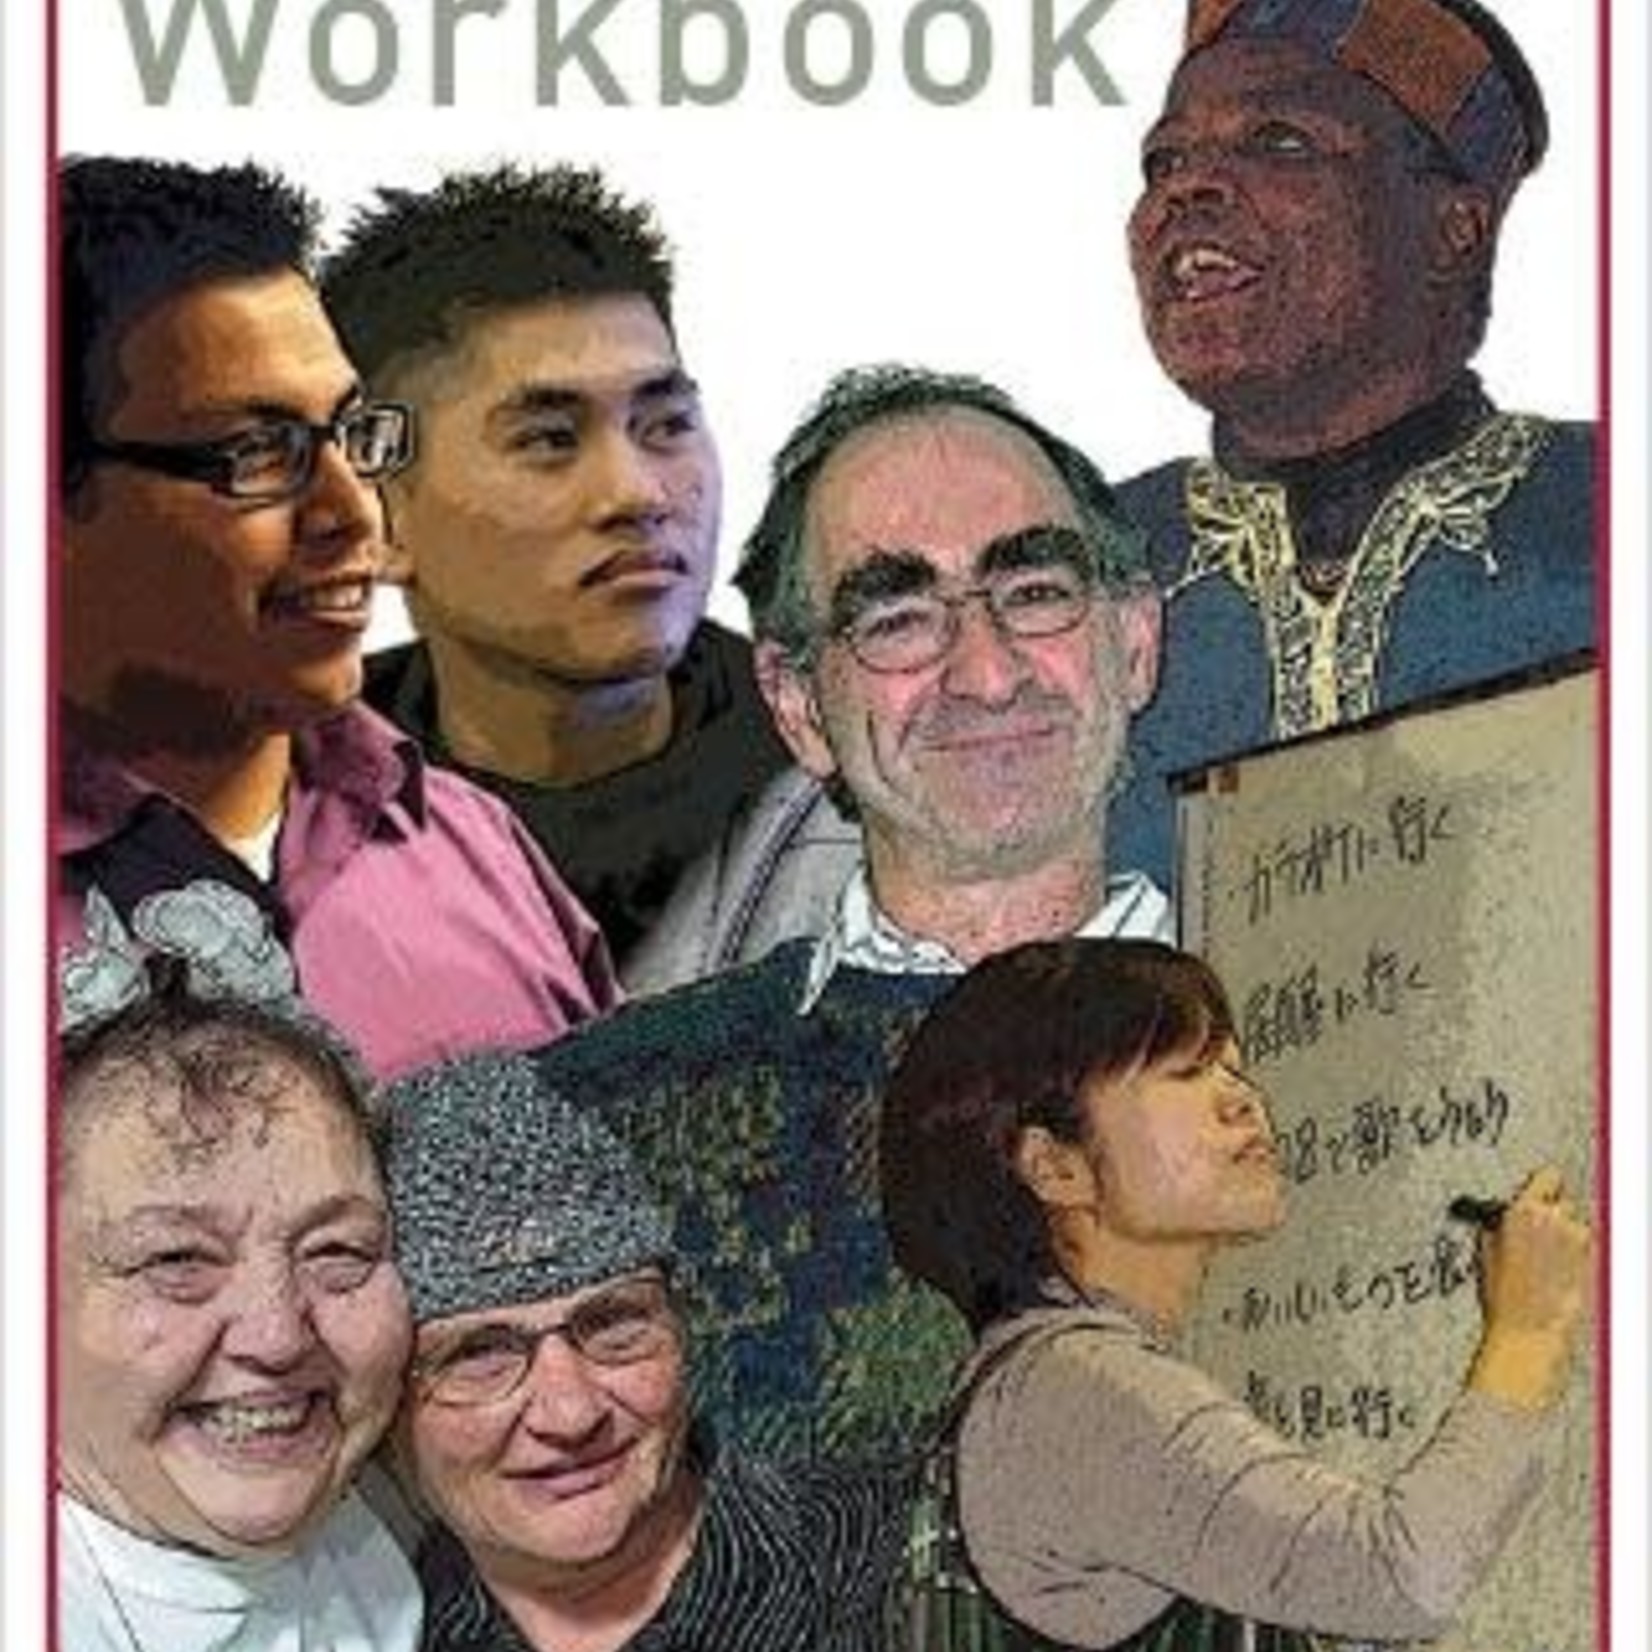 WRAP Workbook